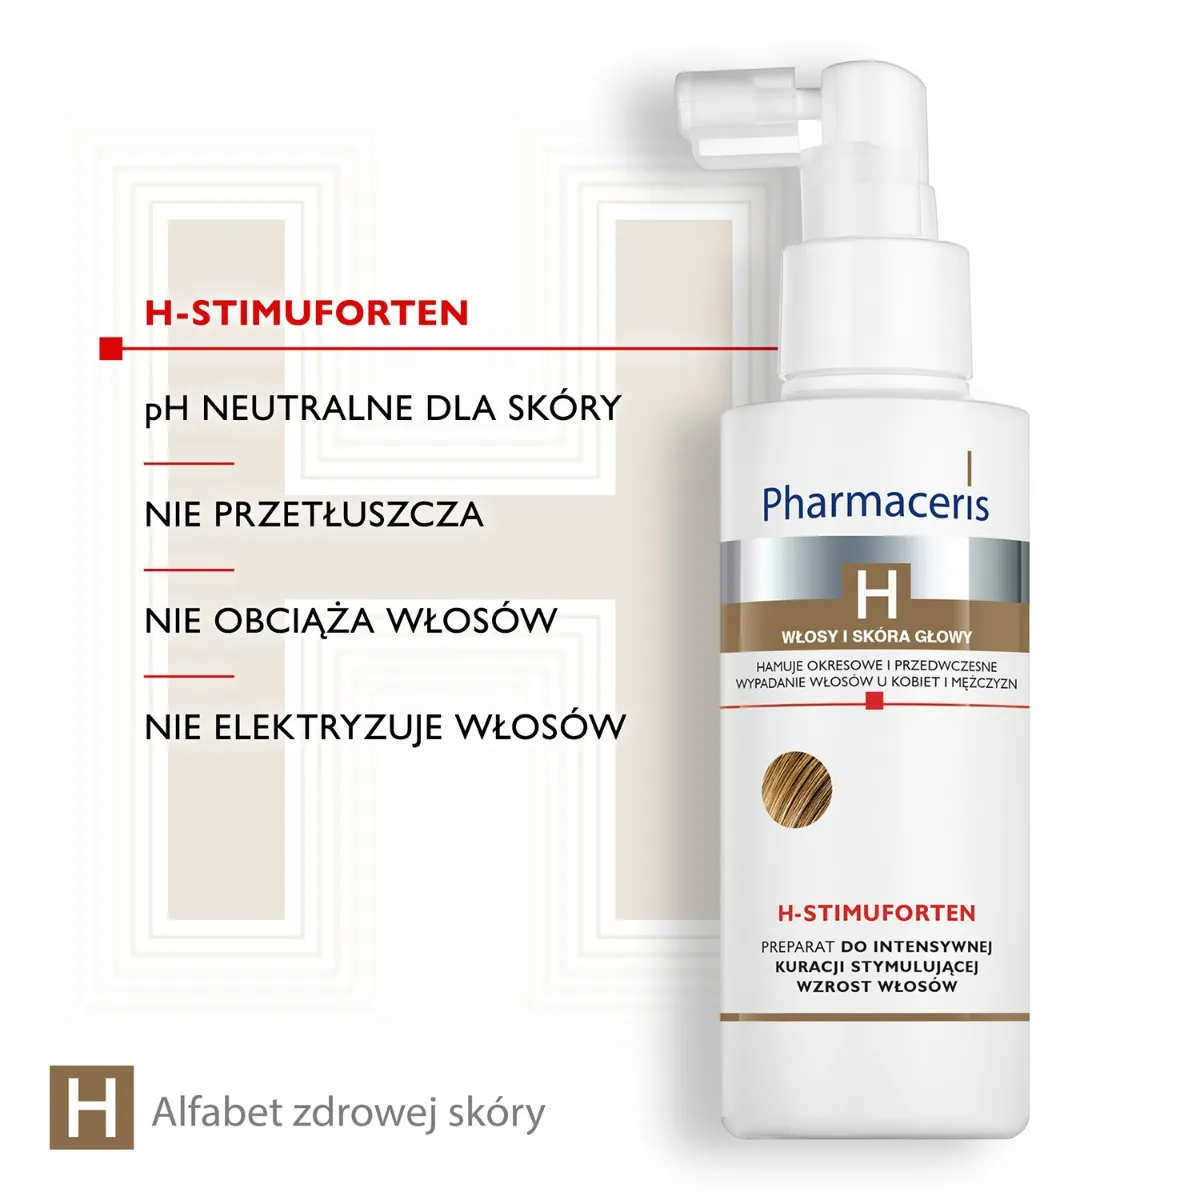 Pharmaceris H Stimuforten, preparat do intensywnej kuracji stymulującej wzrost włosów, 125 ml 